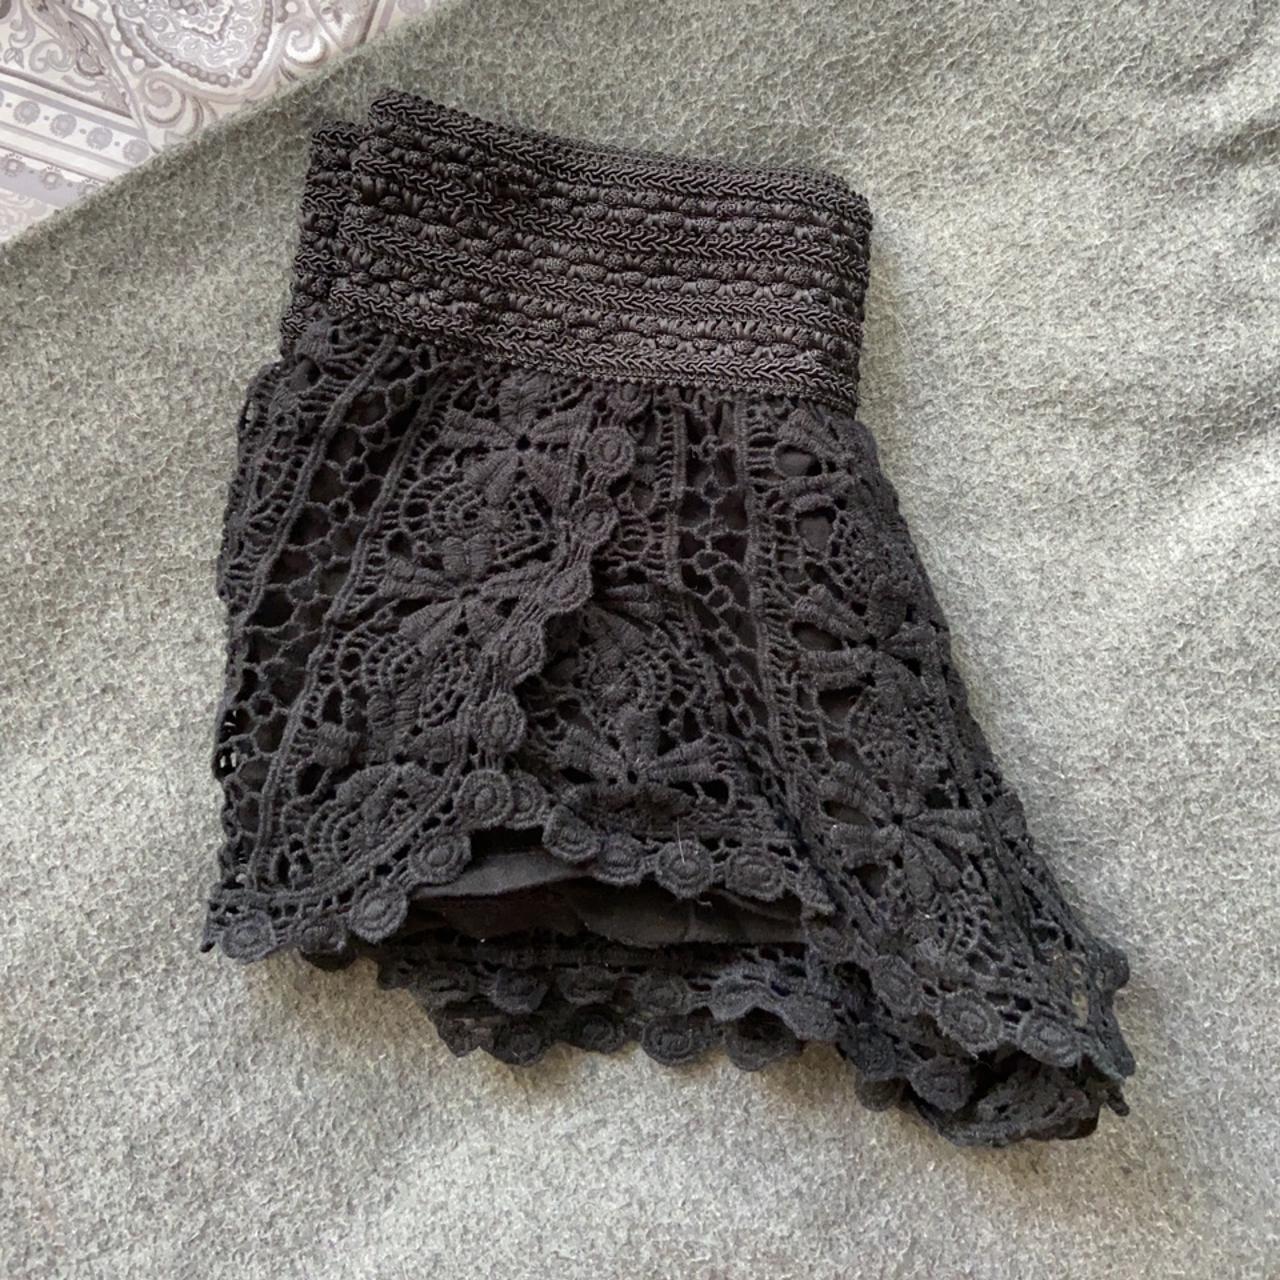 Topshop petite black crochet shorts, super